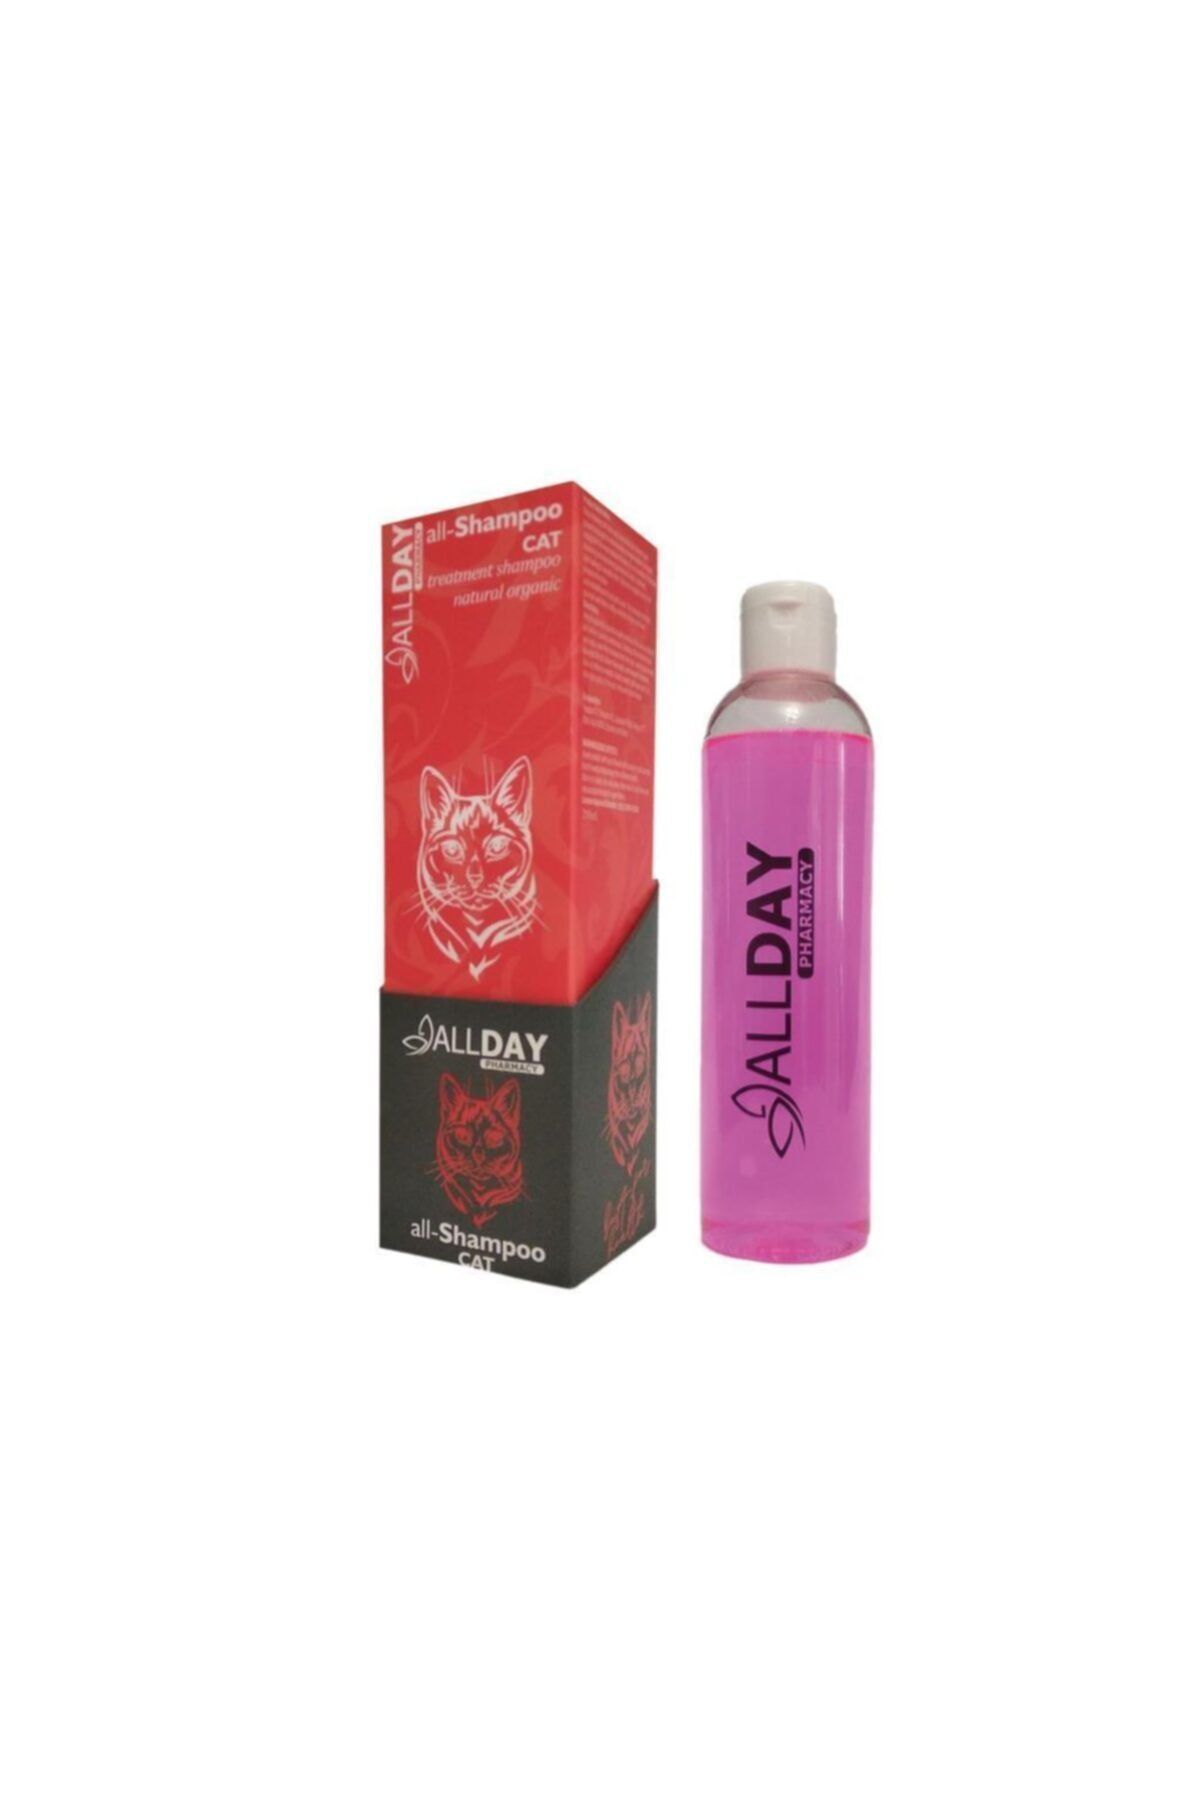 ALLDAY All-shampoo Cat Naturel Organik Kedi Şampuanı 250ml